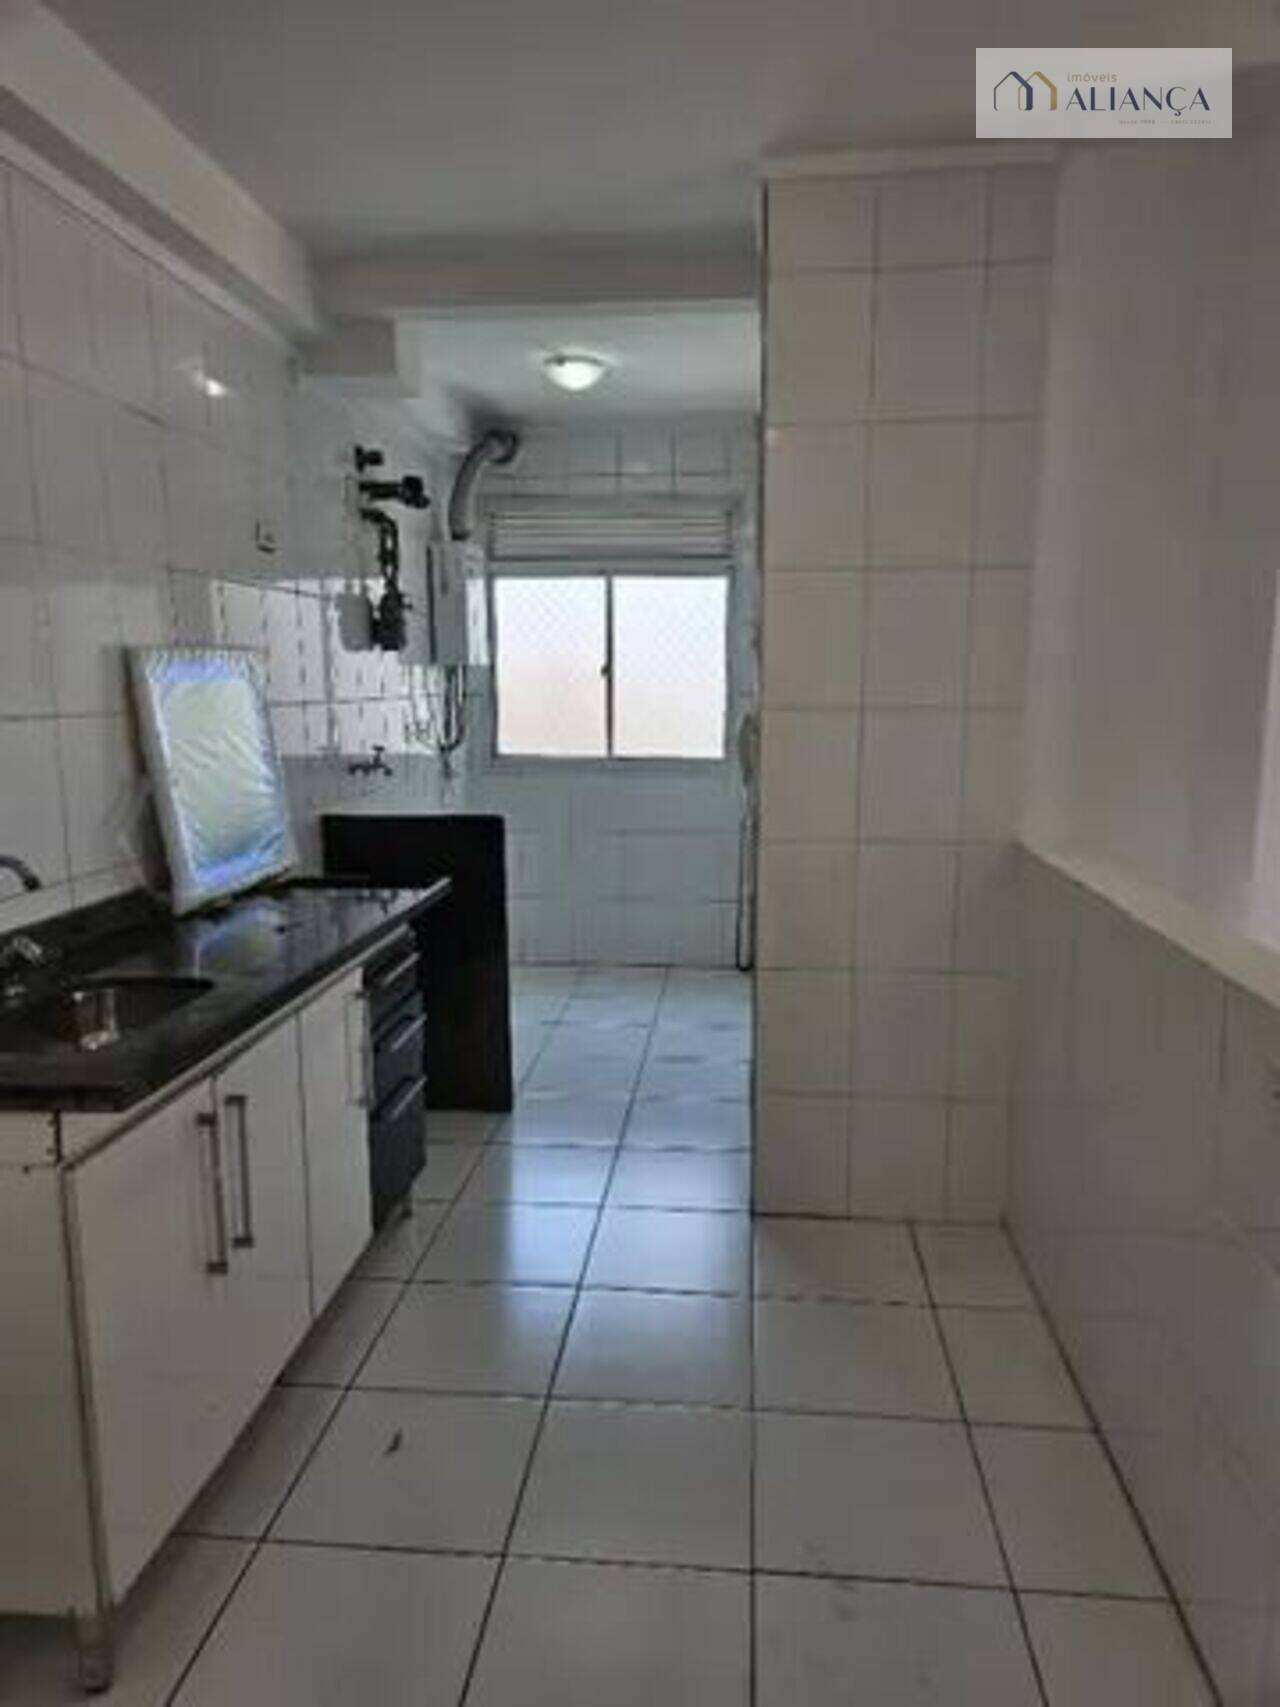 Apartamento Taboão, São Bernardo do Campo - SP